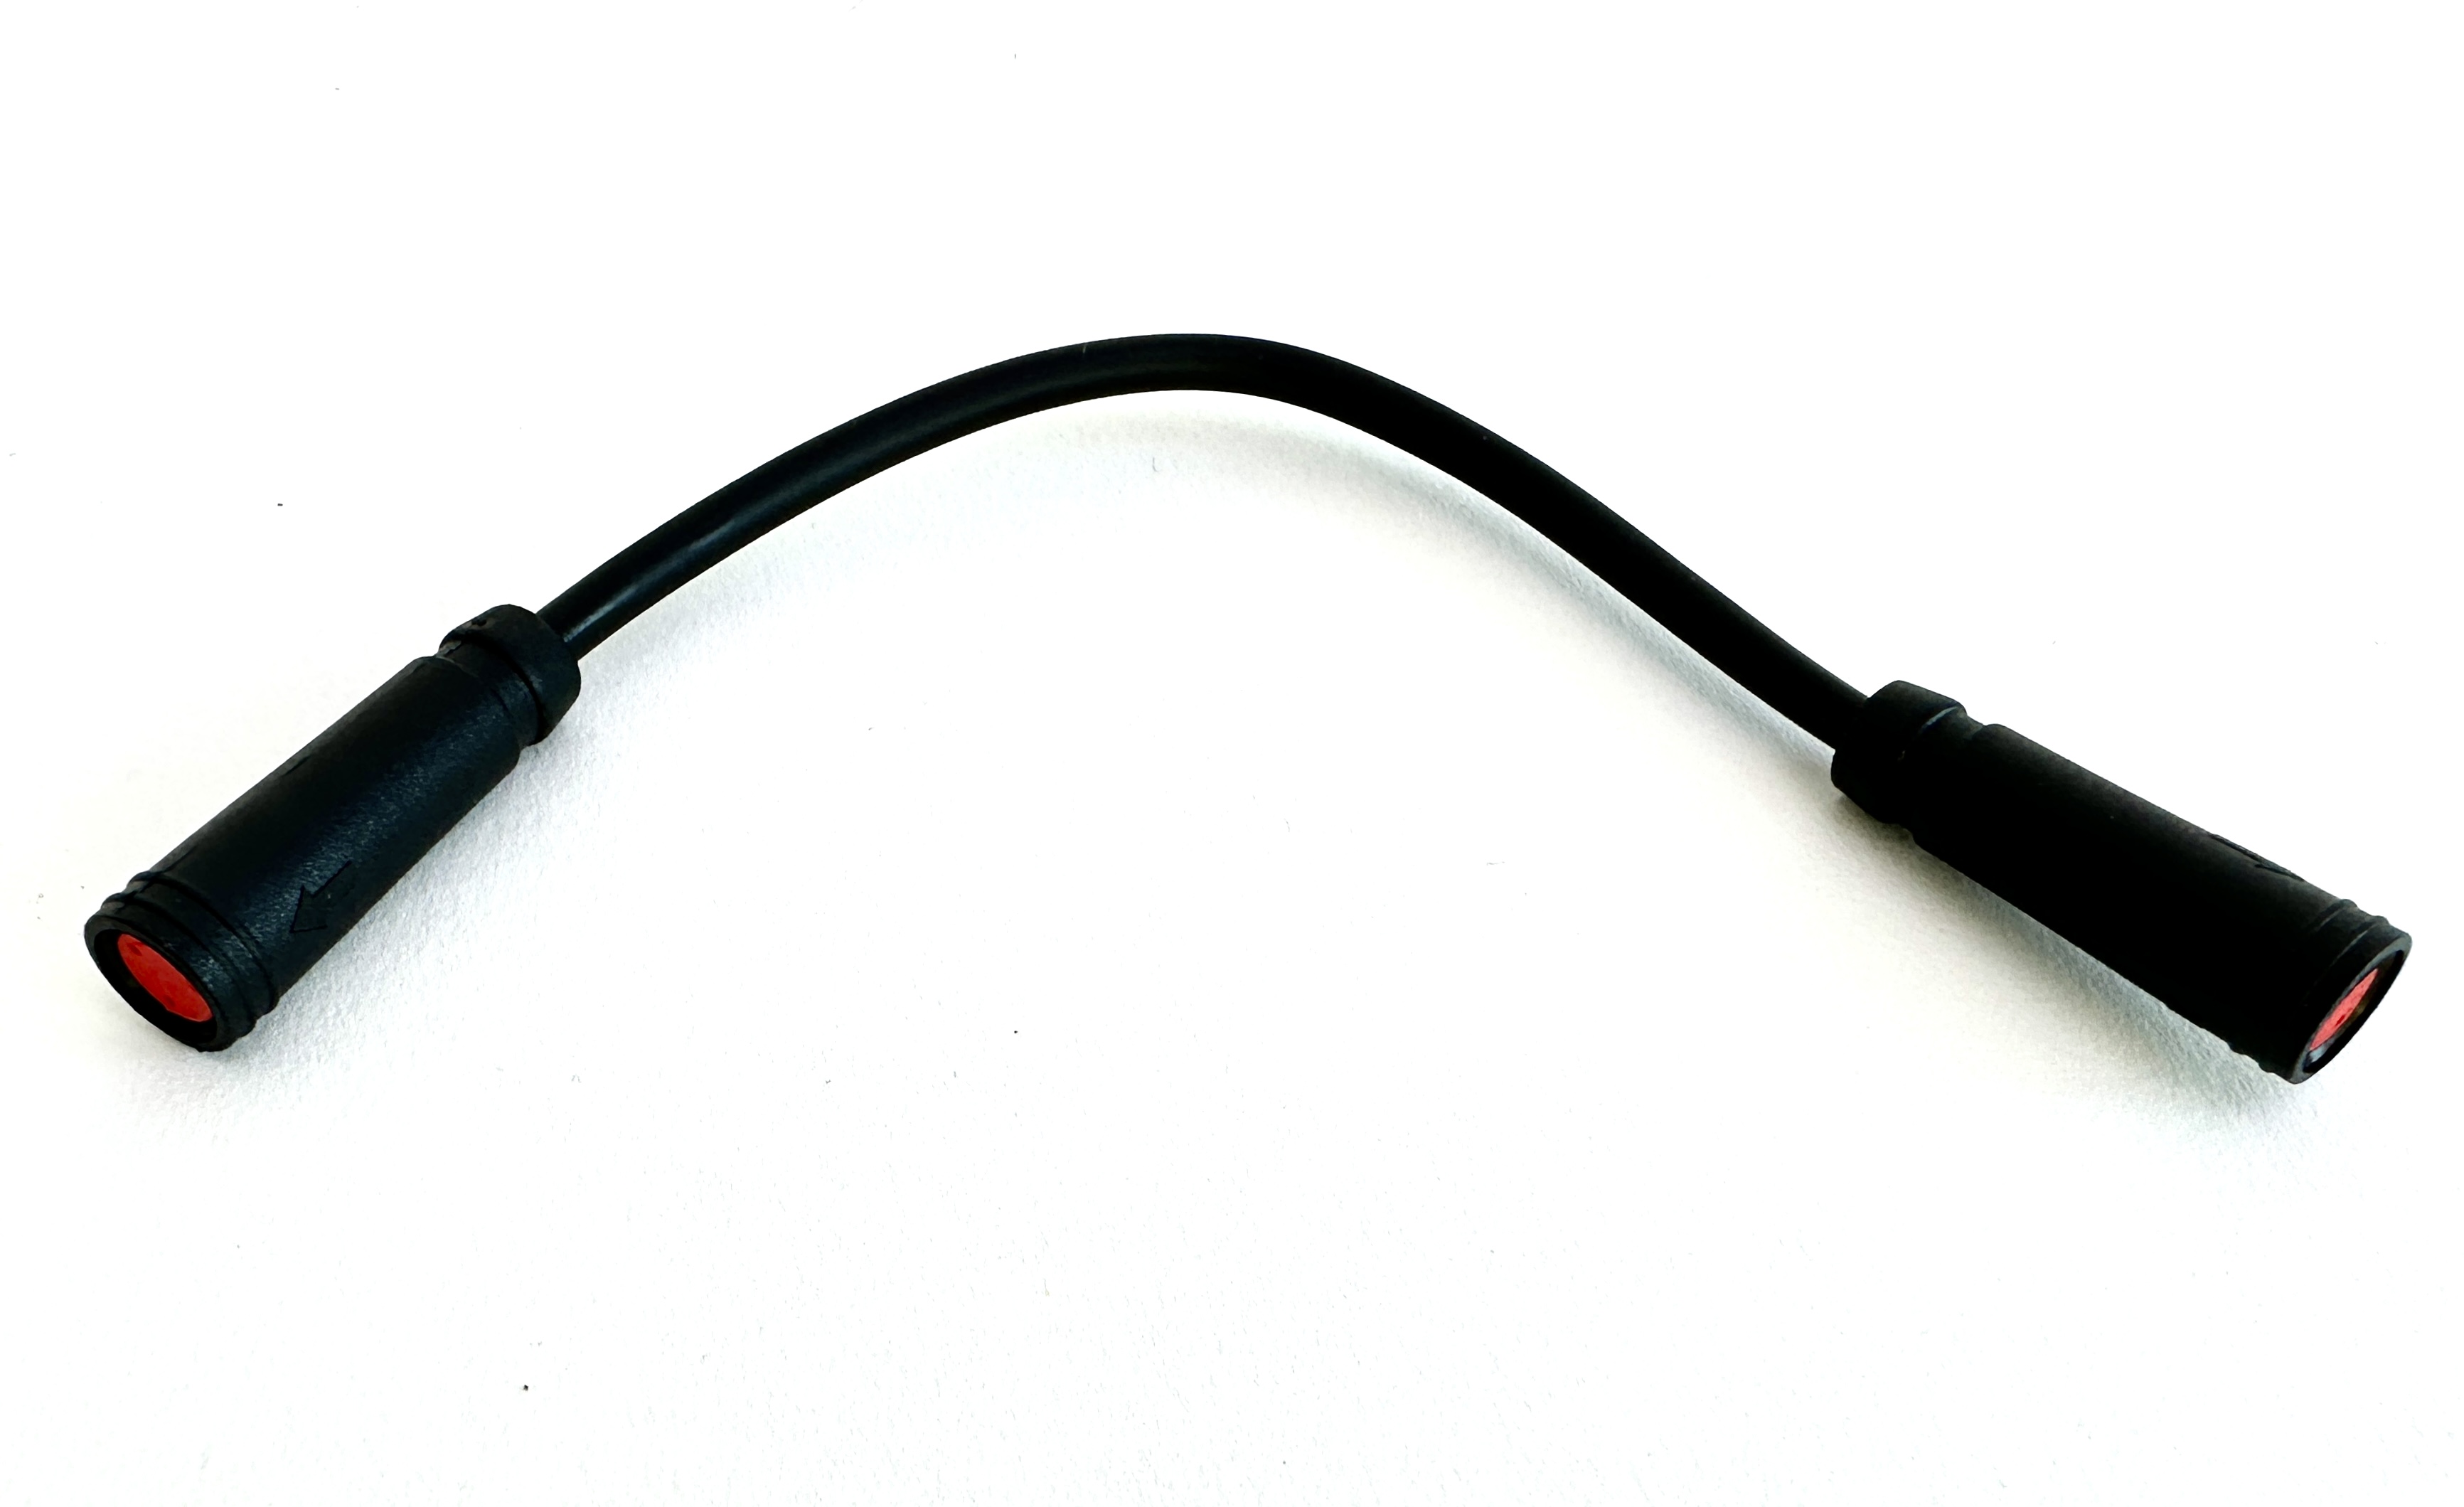 HIGO / Julet Câble adaptateur 10,5 cm pour Ebike, 2 PIN femelle à femelle, rouge